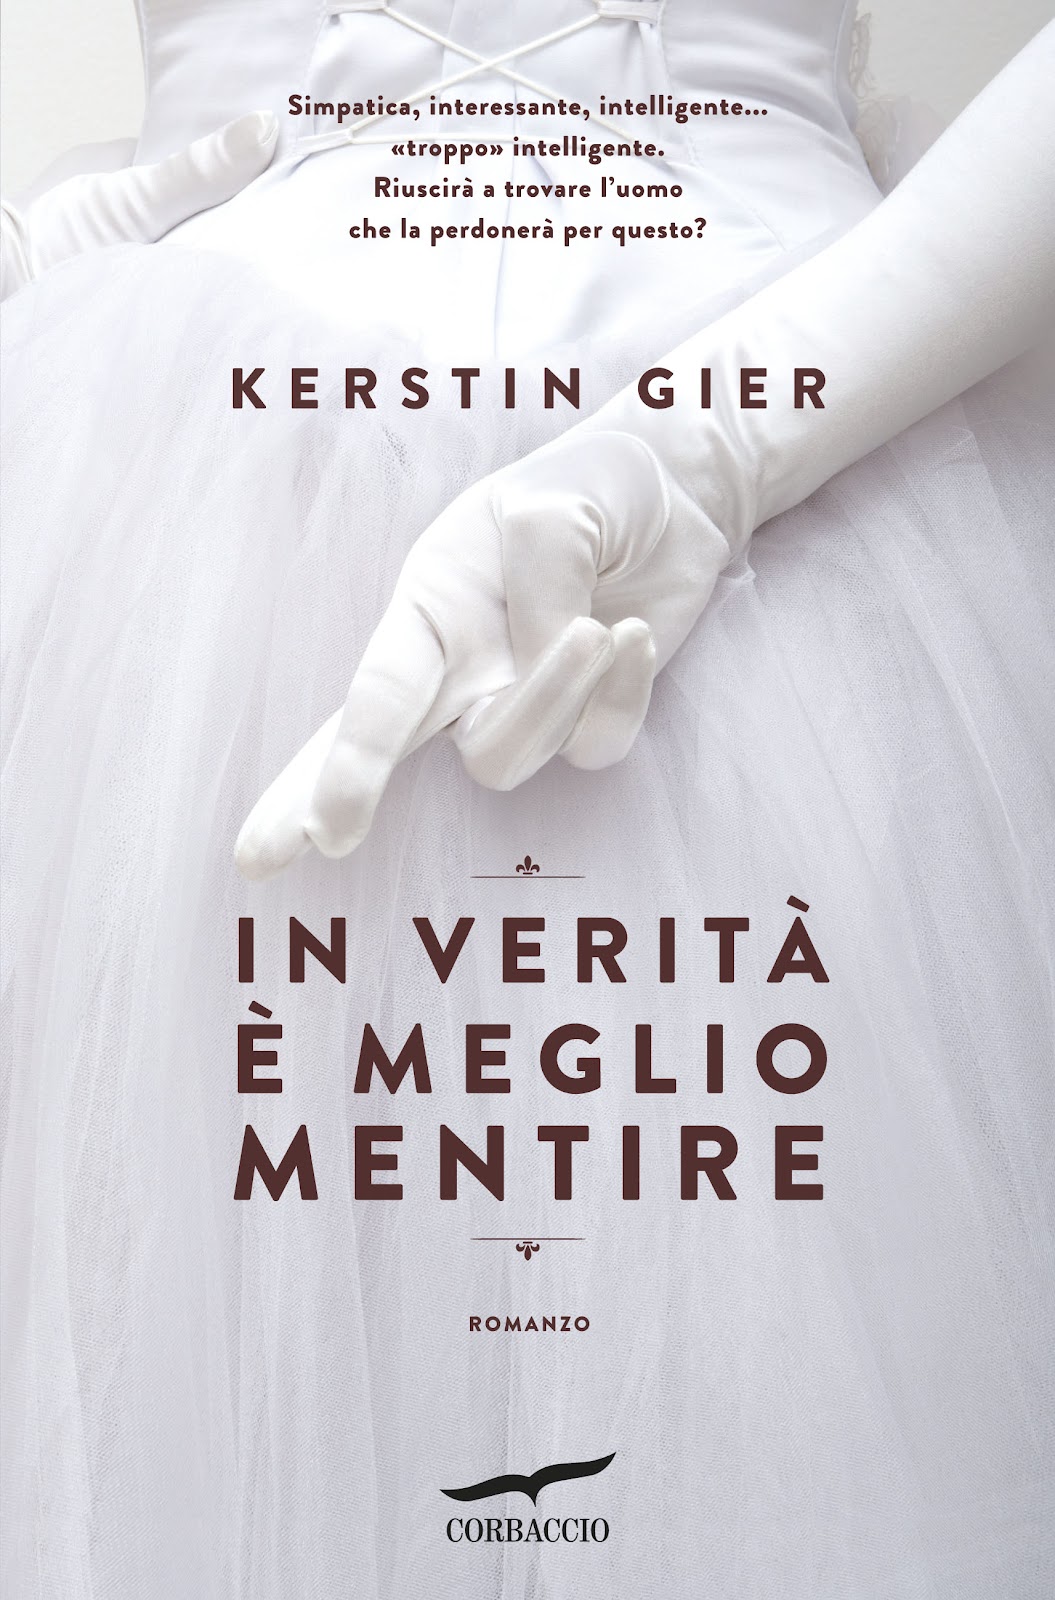 In verità è meglio mentire di Kerstin Gier, un romanzo al femminile carico di ironia